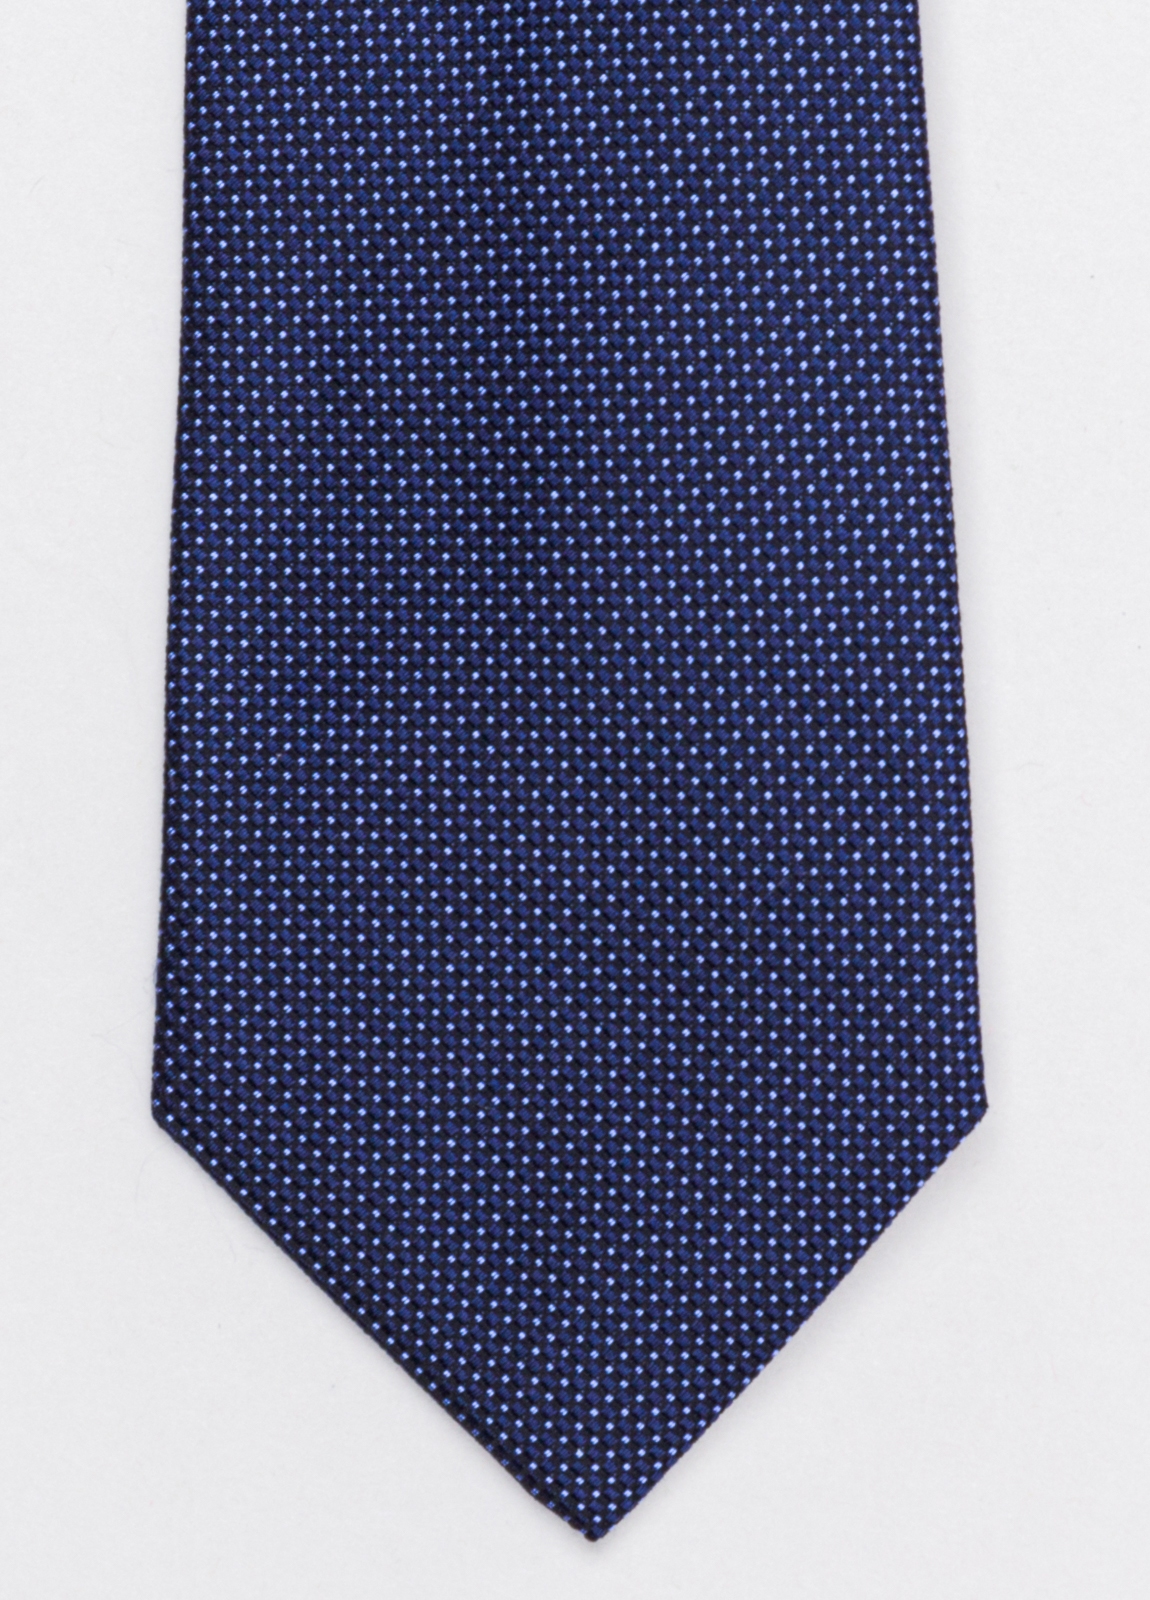 Corbata FUREST COLECCIÓN color marino con micro topito